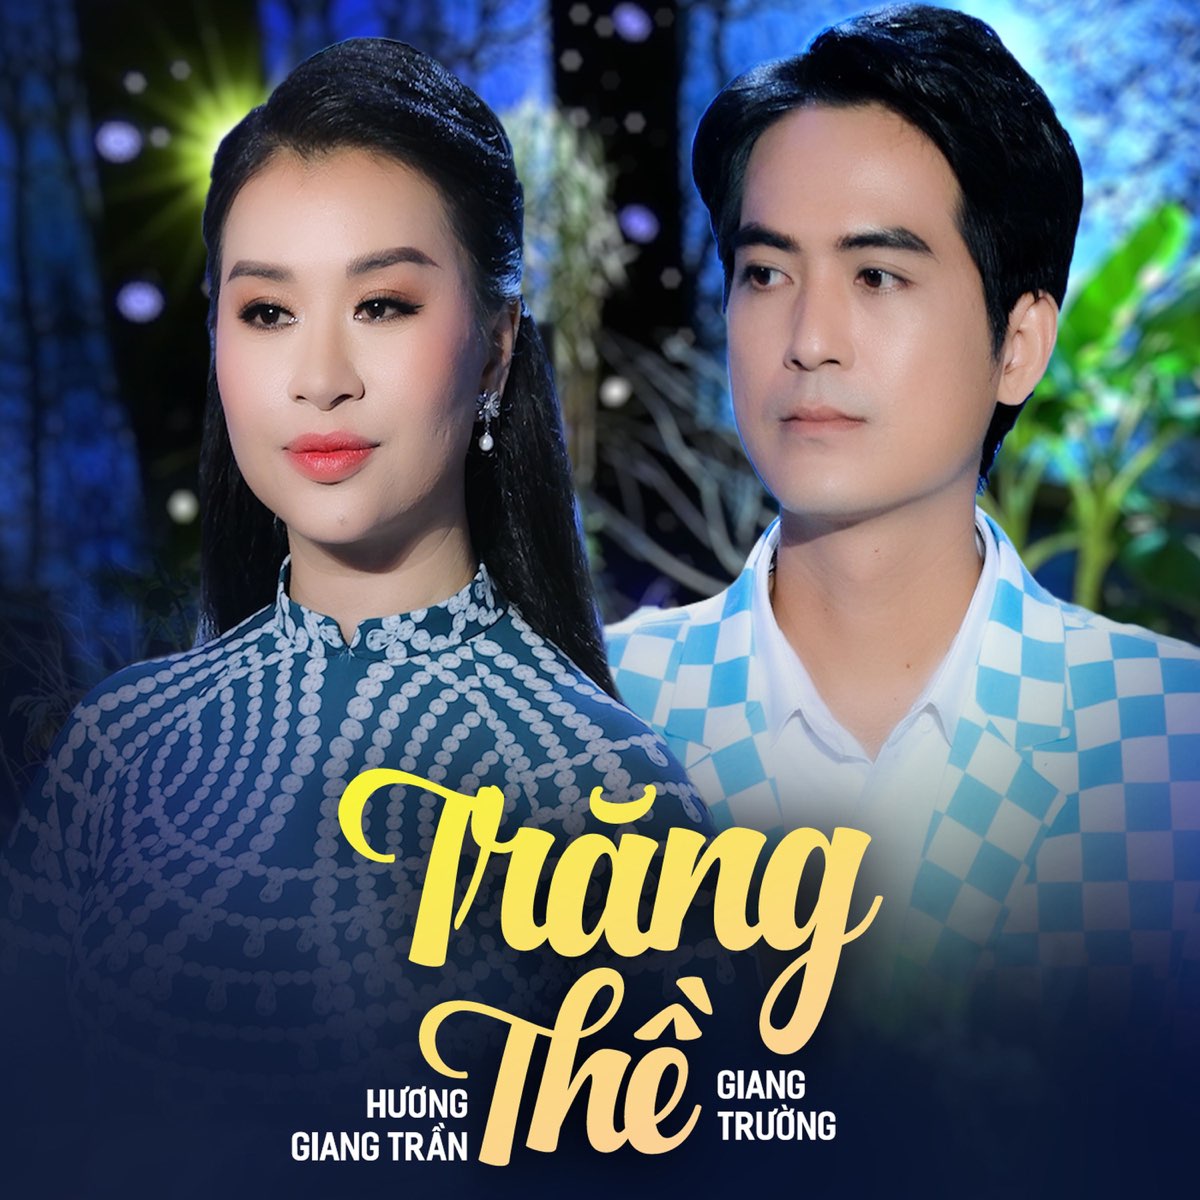 ‎Trăng Thề - Single - Album by Huong Giang Tran & Giang Trường - Apple ...